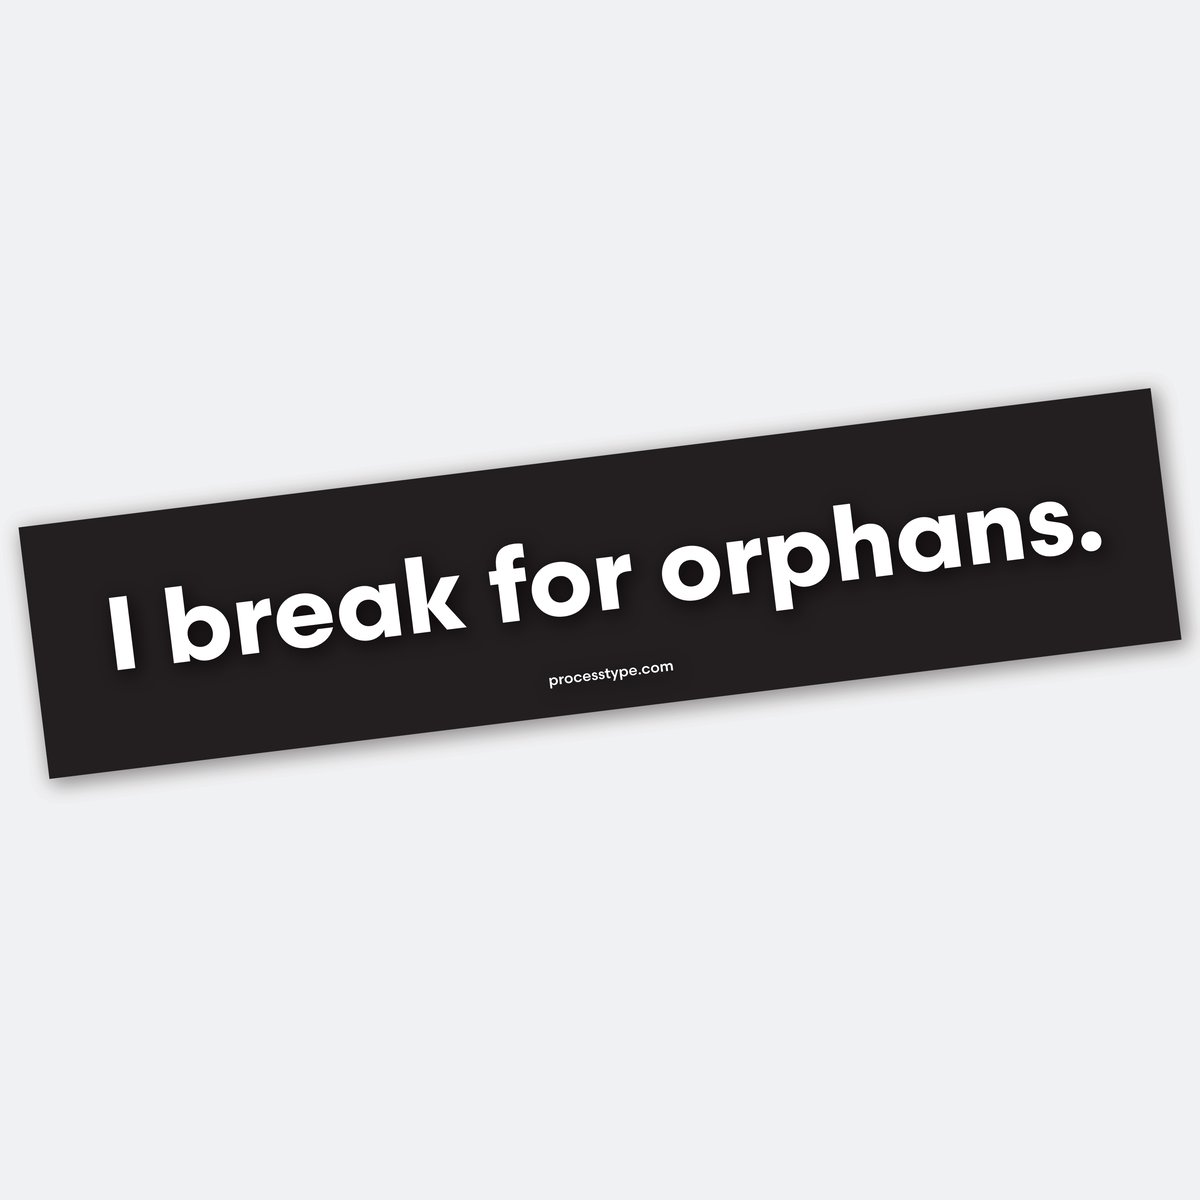 Image of “I break for orphans.” sticker